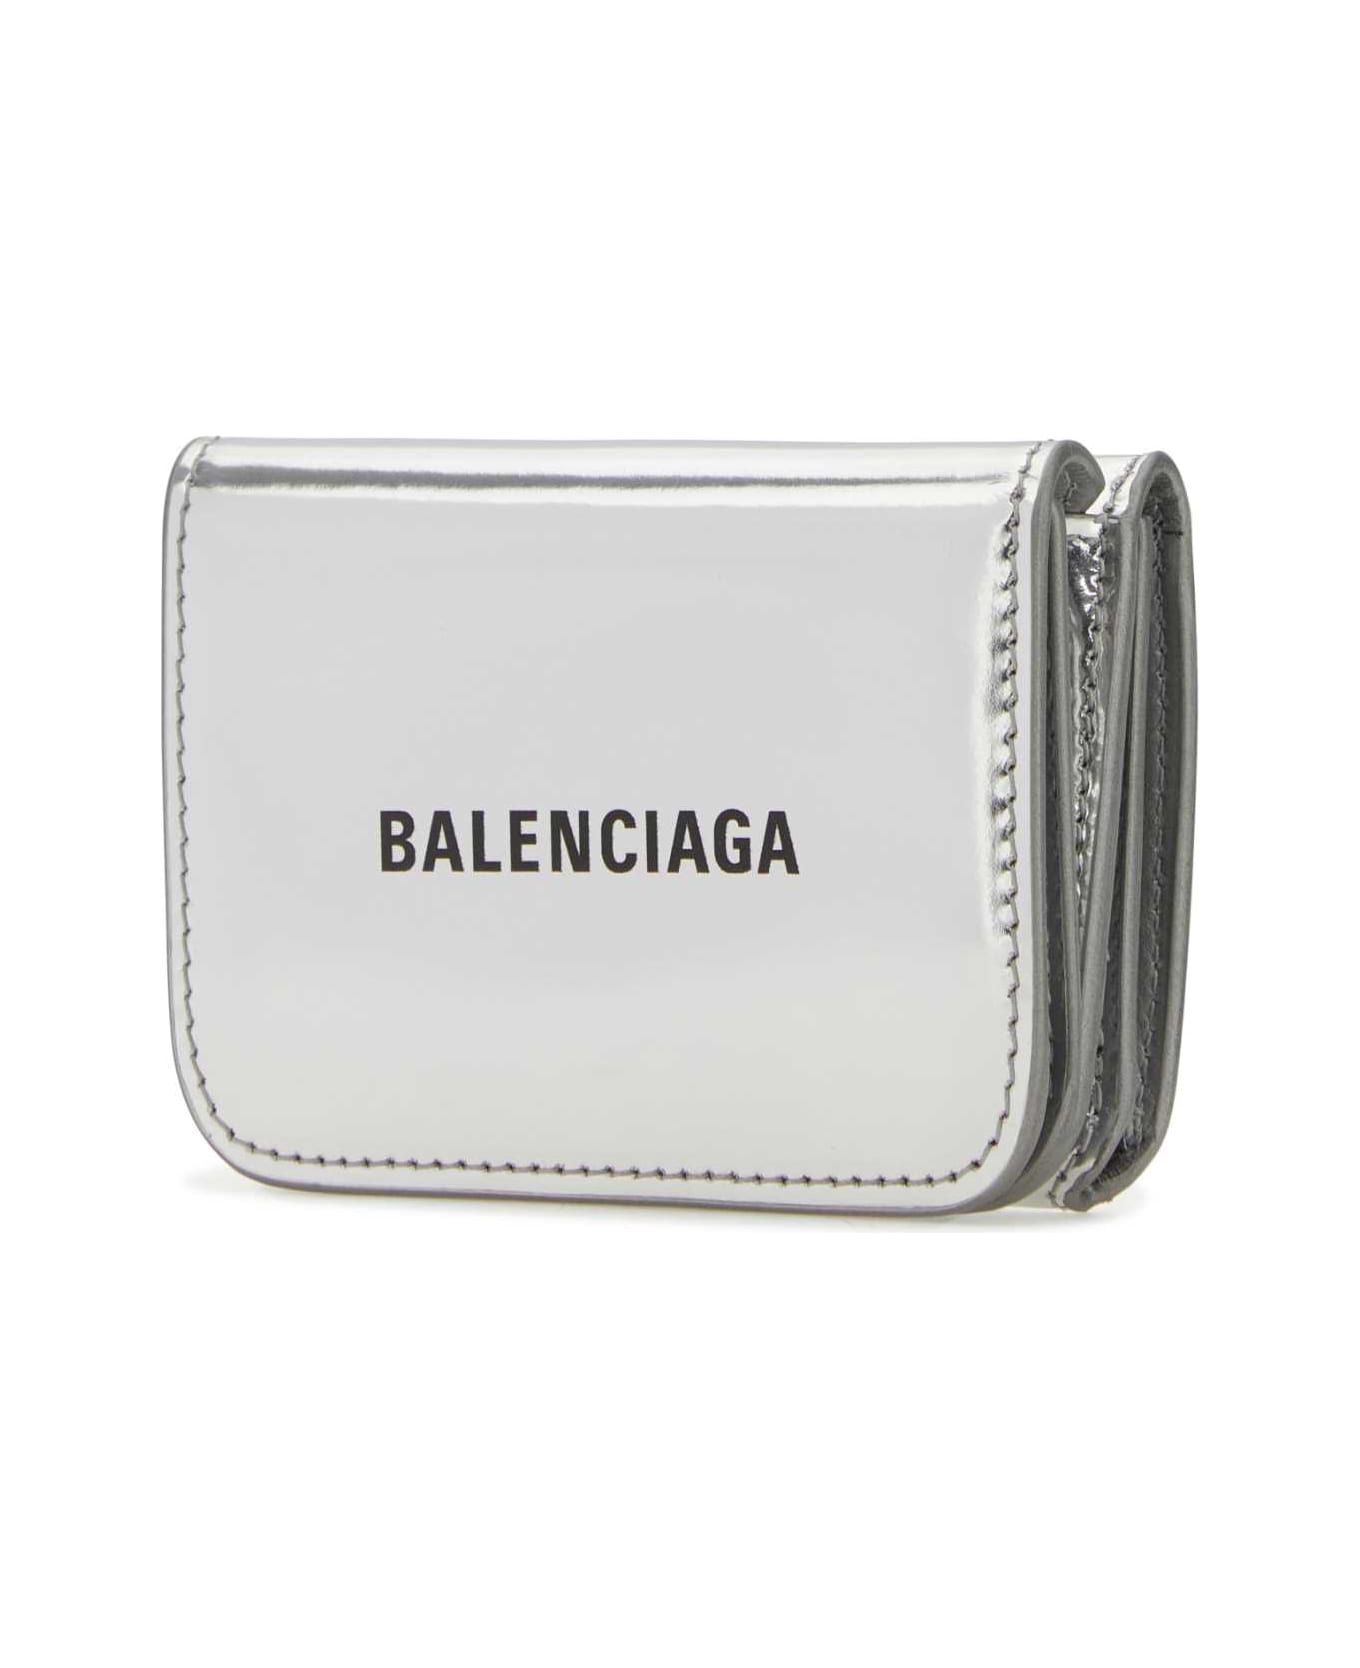 Balenciaga Silver Leather Wallet - 8160